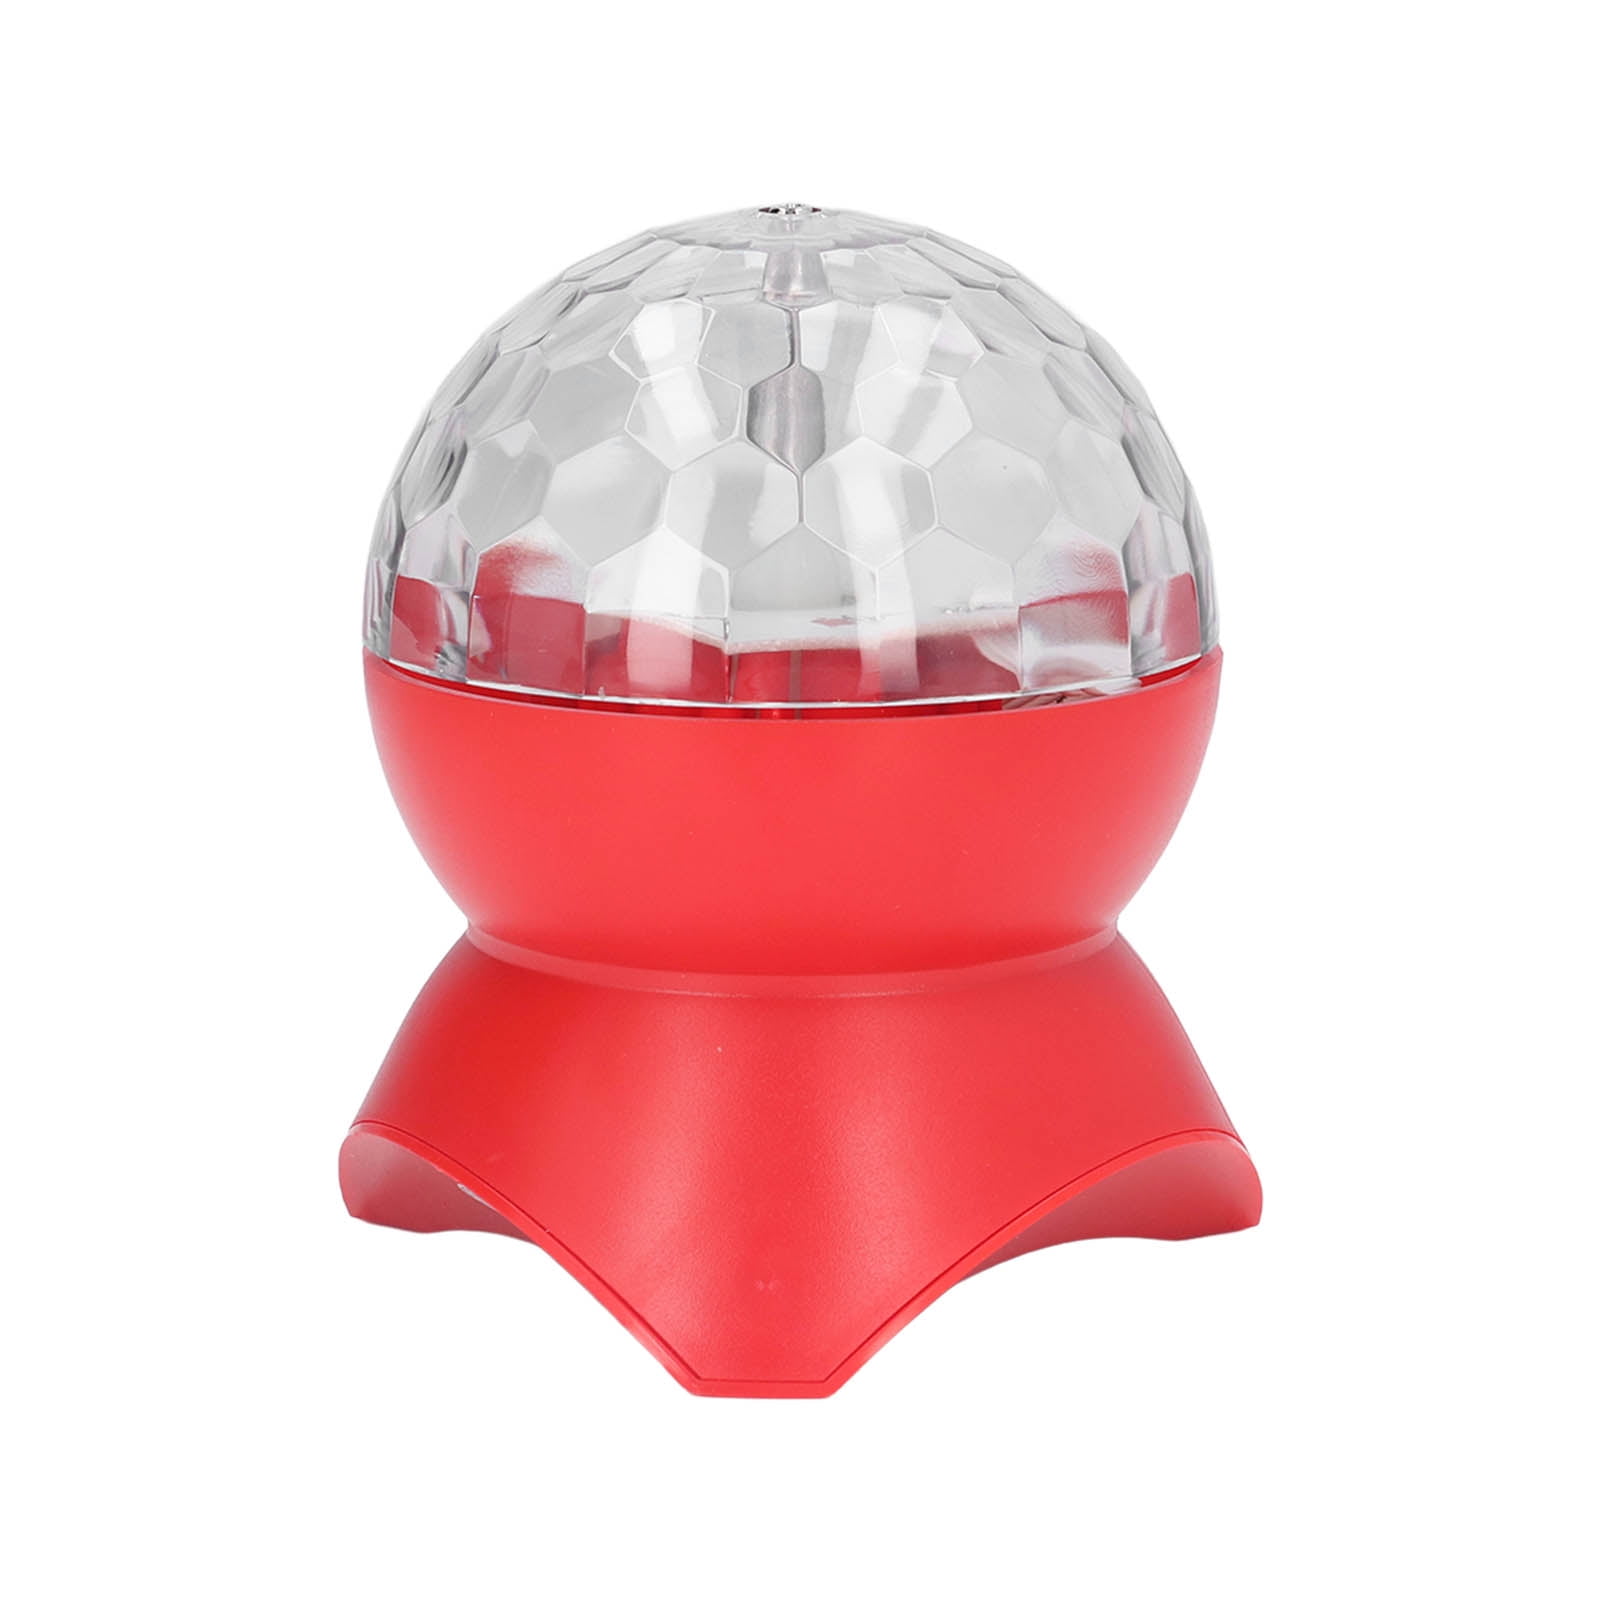 Haut-Parleur Boule Disco, Portable Mini Boule Disco Coloré Antidérapant  Lumière Rotative Charge USB Pour KTV Rouge